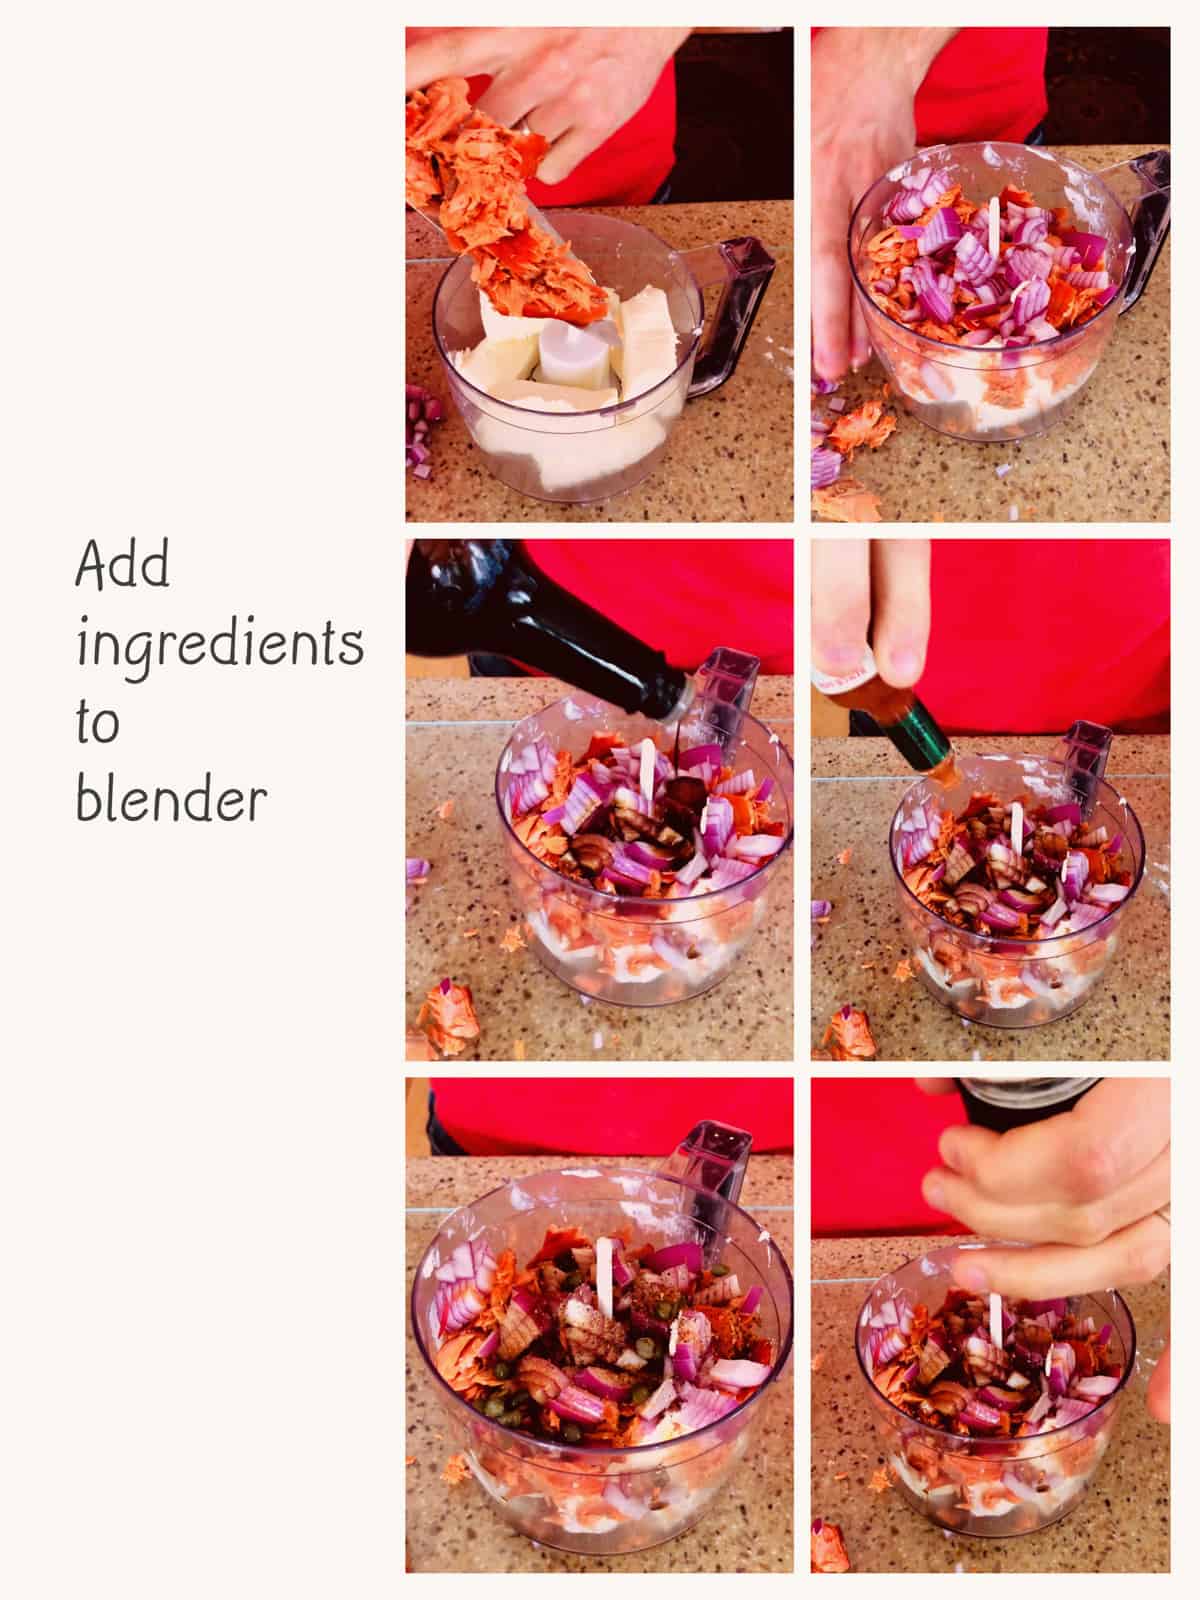 Adding all ingredients to blender to make salmon dip